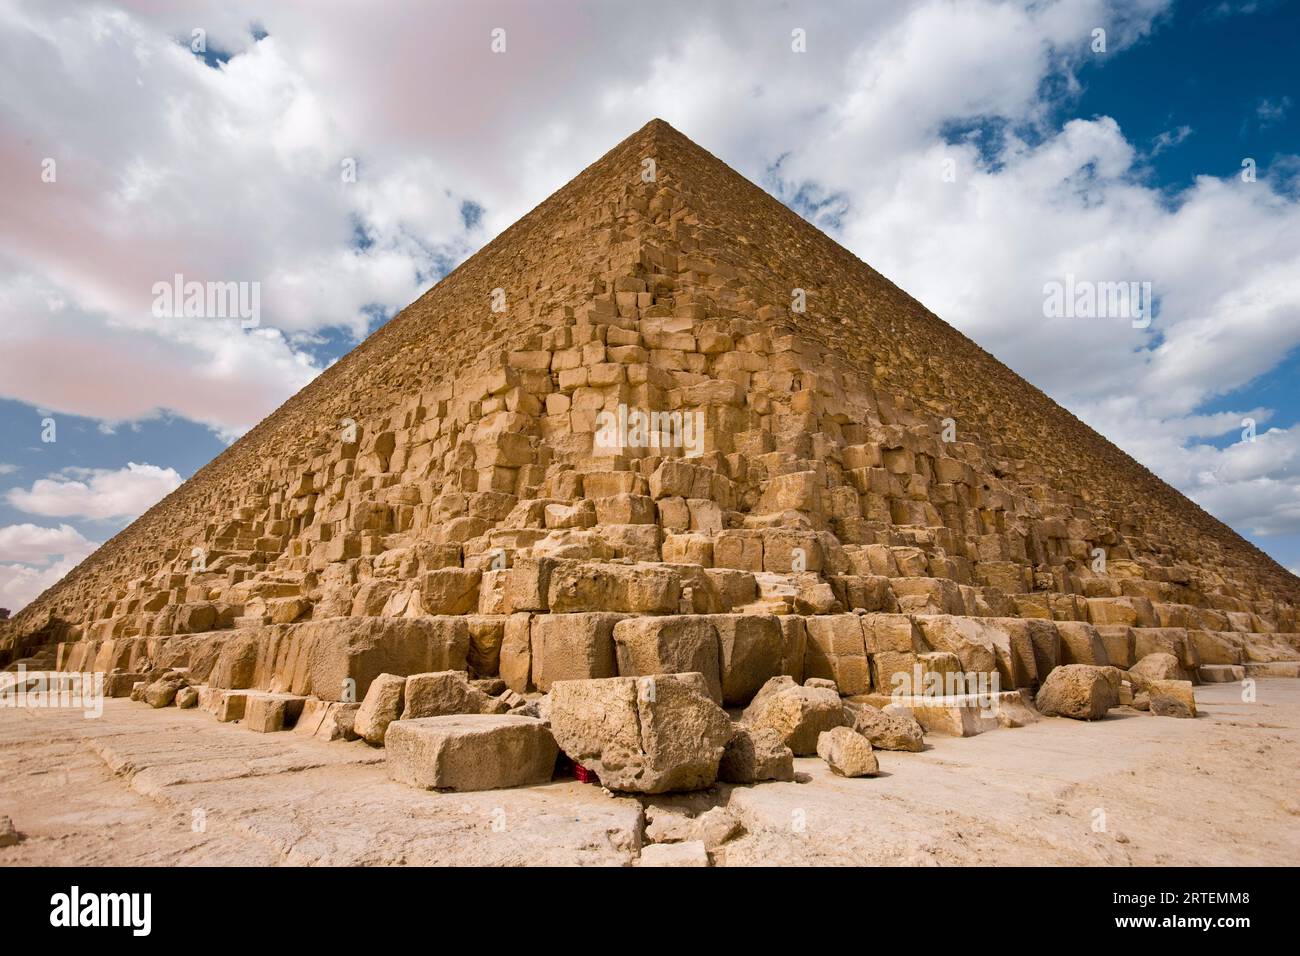 Grande pyramide de Gizeh, ou Pyramide de Khéops ; Gizeh, Egypte Banque D'Images